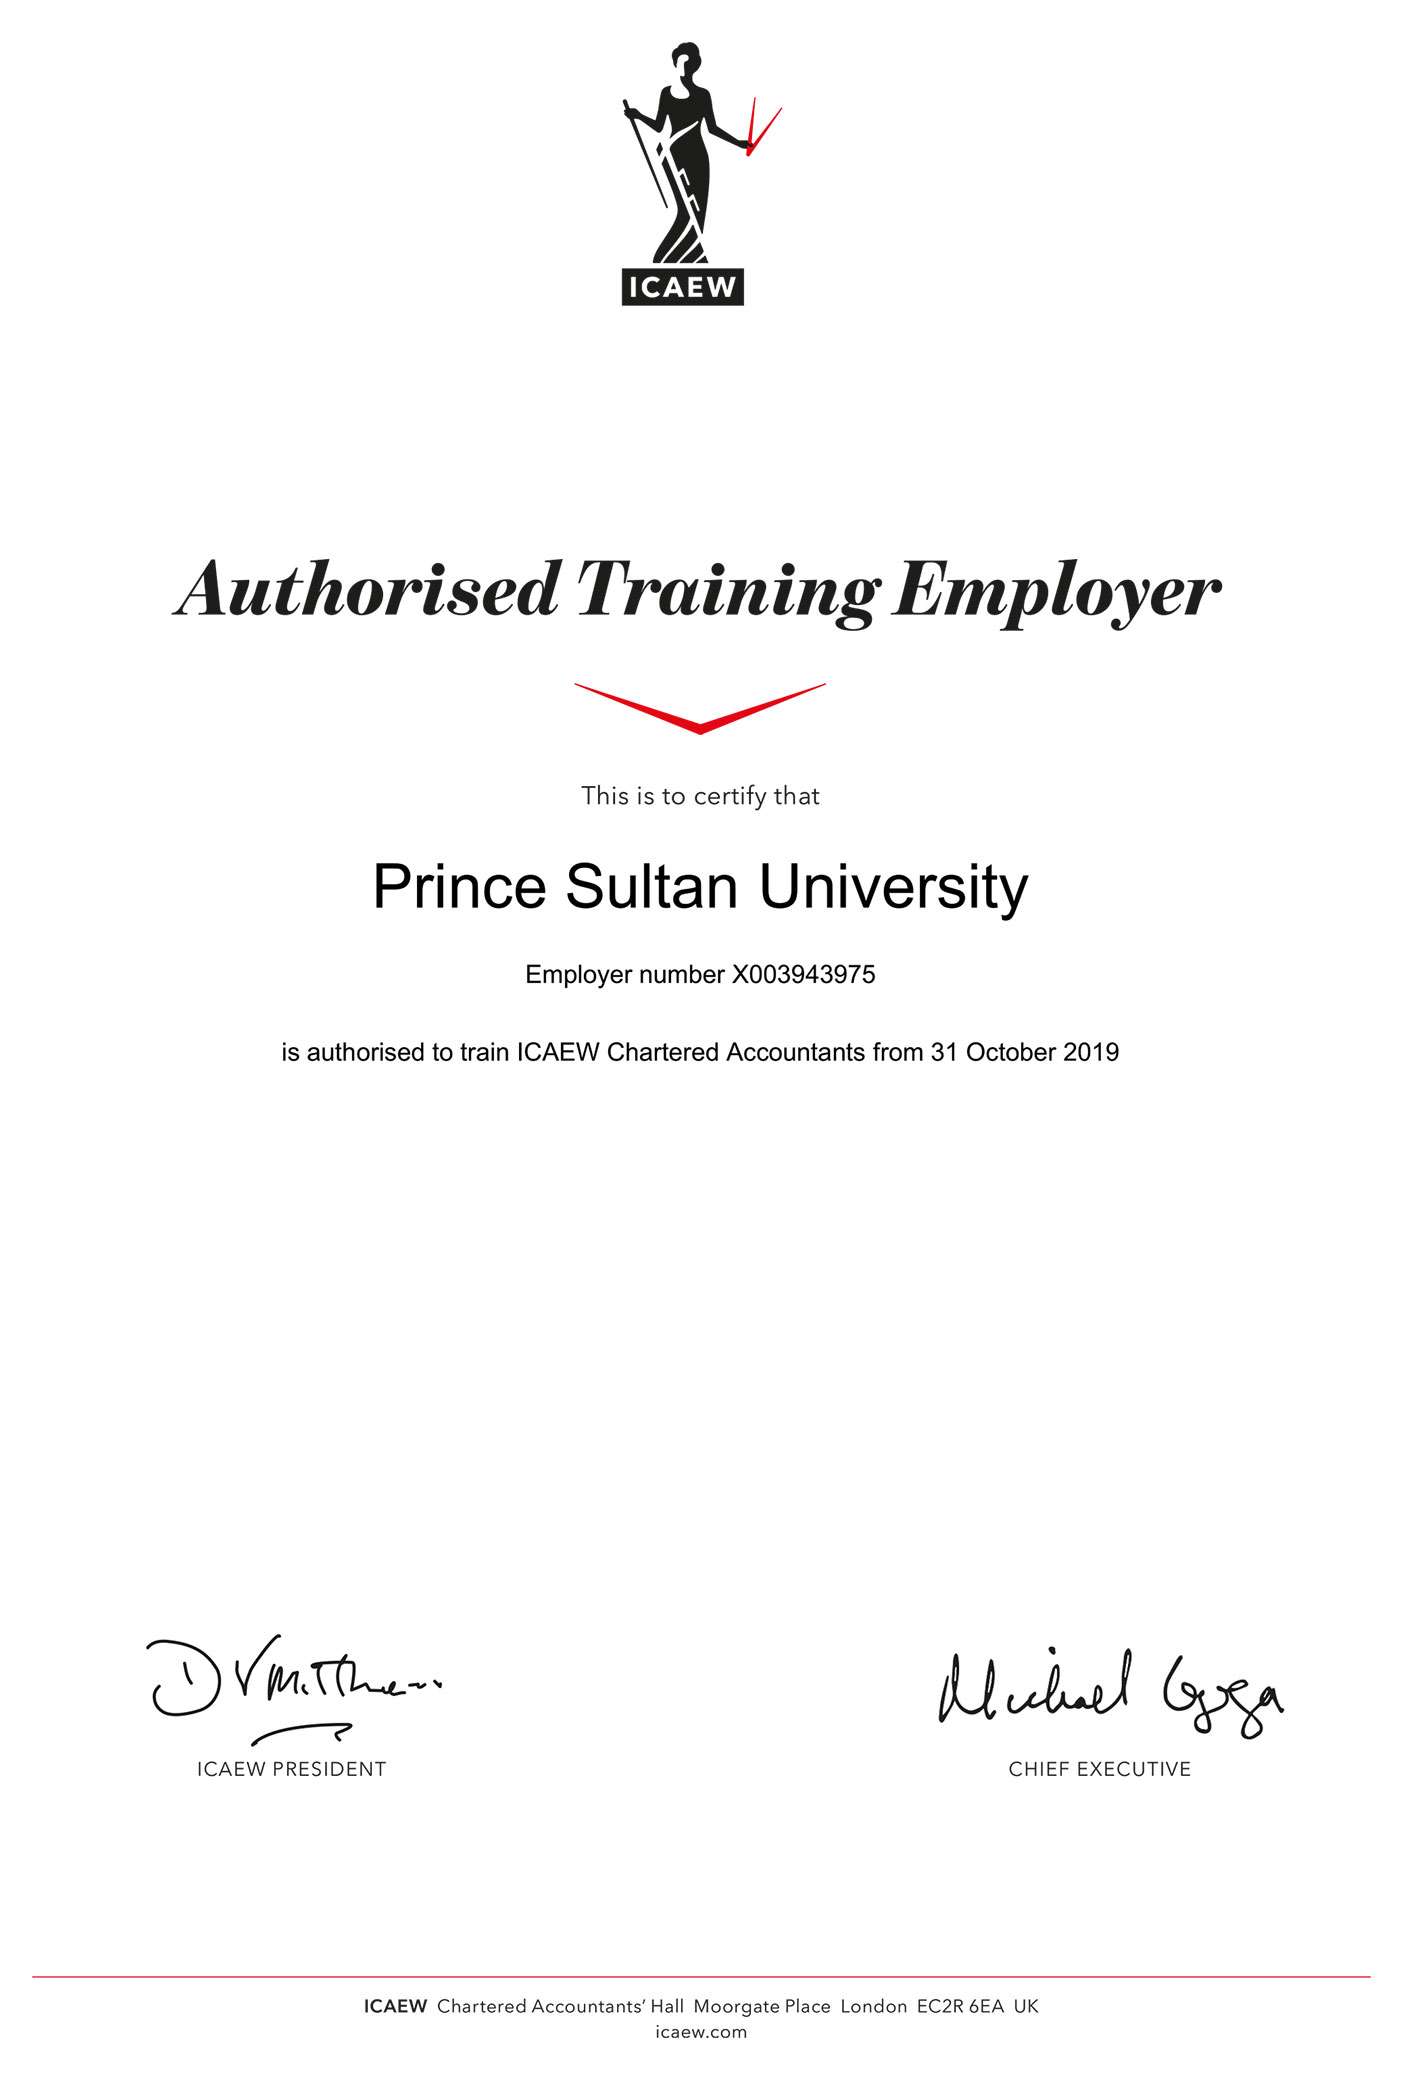 Prince Sultan University ATE Certificate